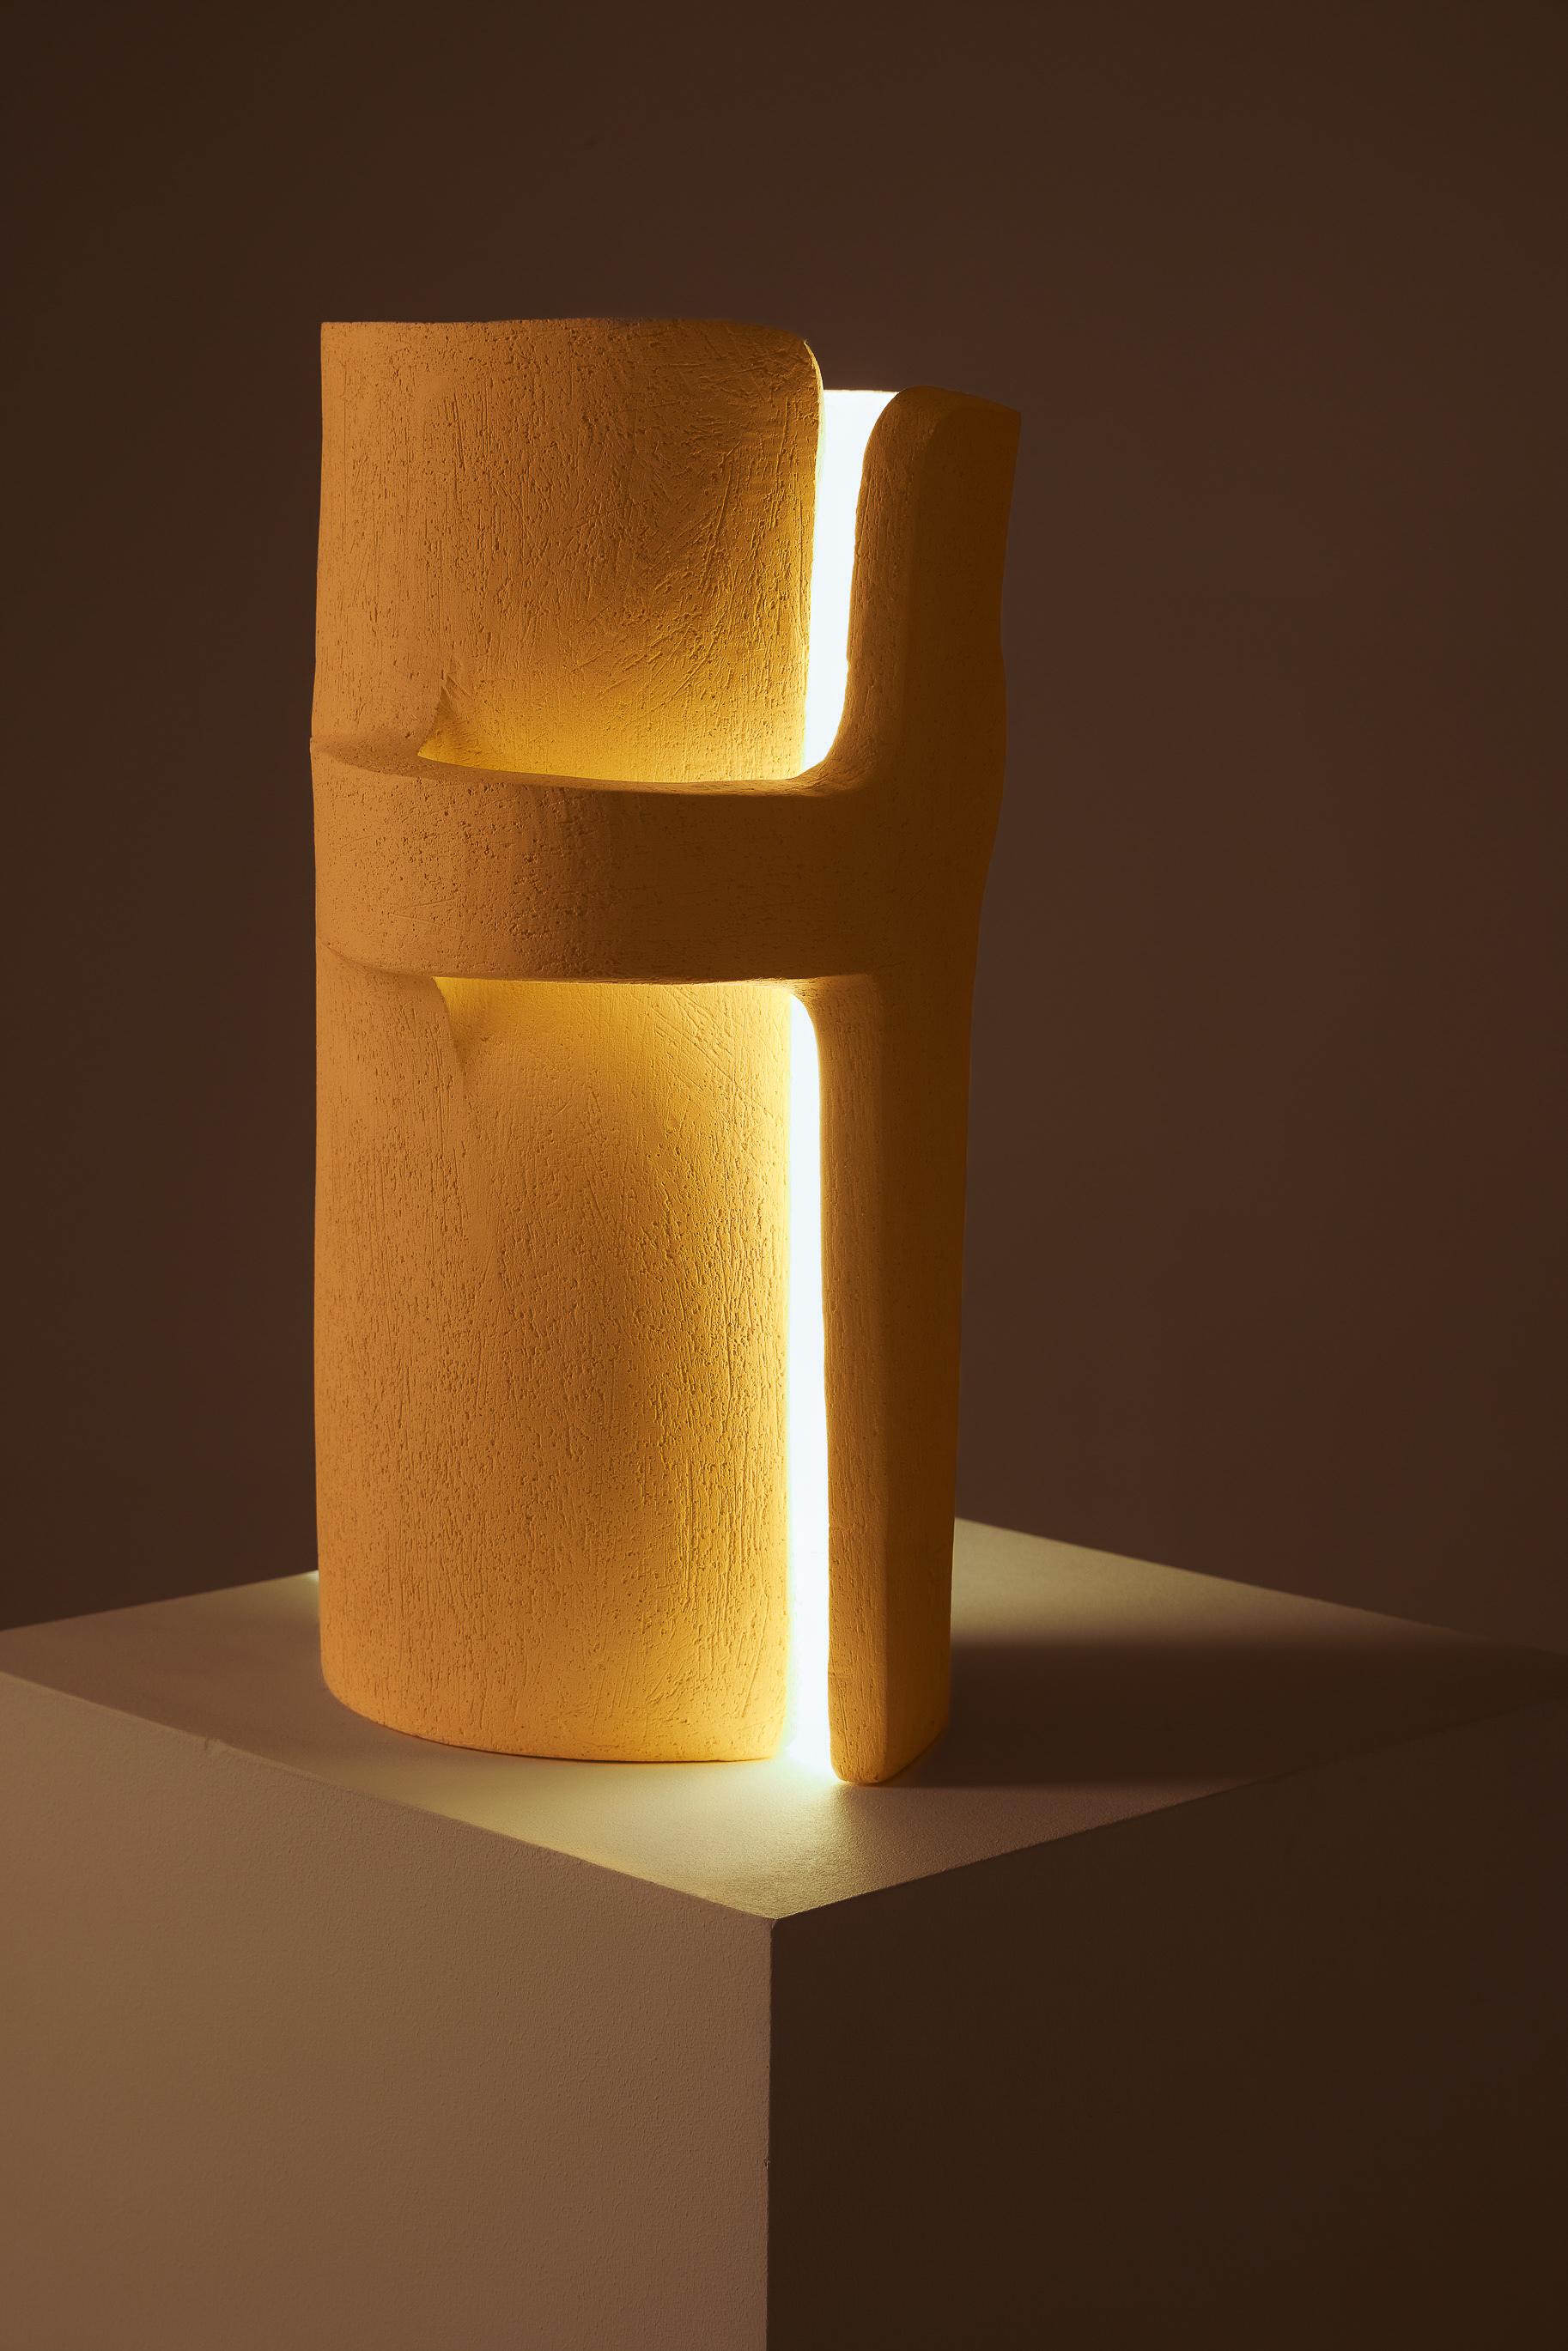  Aus weißem Stein gefertigte Lampe der ukrainischen Designerin und Bildhauerin Kseniya Kravtsova. Die Lampe stellt zwei ineinander verschlungene Figuren dar. Ein einzigartiges zeitgenössisches Stück. Ausgezeichneter Zustand. Ihre Arbeit ist mit der